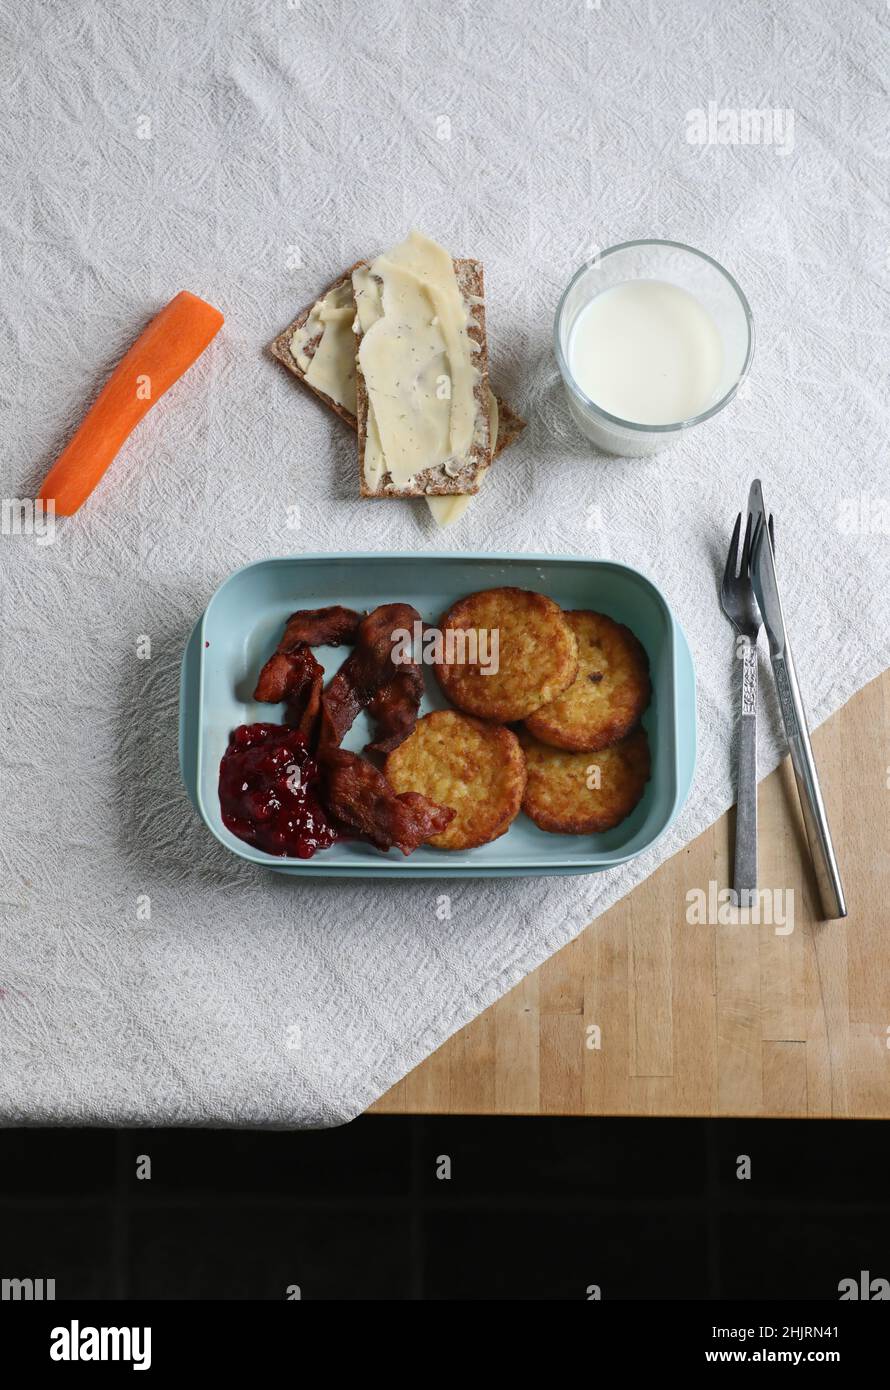 Gennaio è il mese povero non ufficiale dell'anno. Qui c'è qualcuno che mangia focaccine di patate, pancetta con carota, croccante svedese e un bicchiere di latte per pranzo. Foto Stock